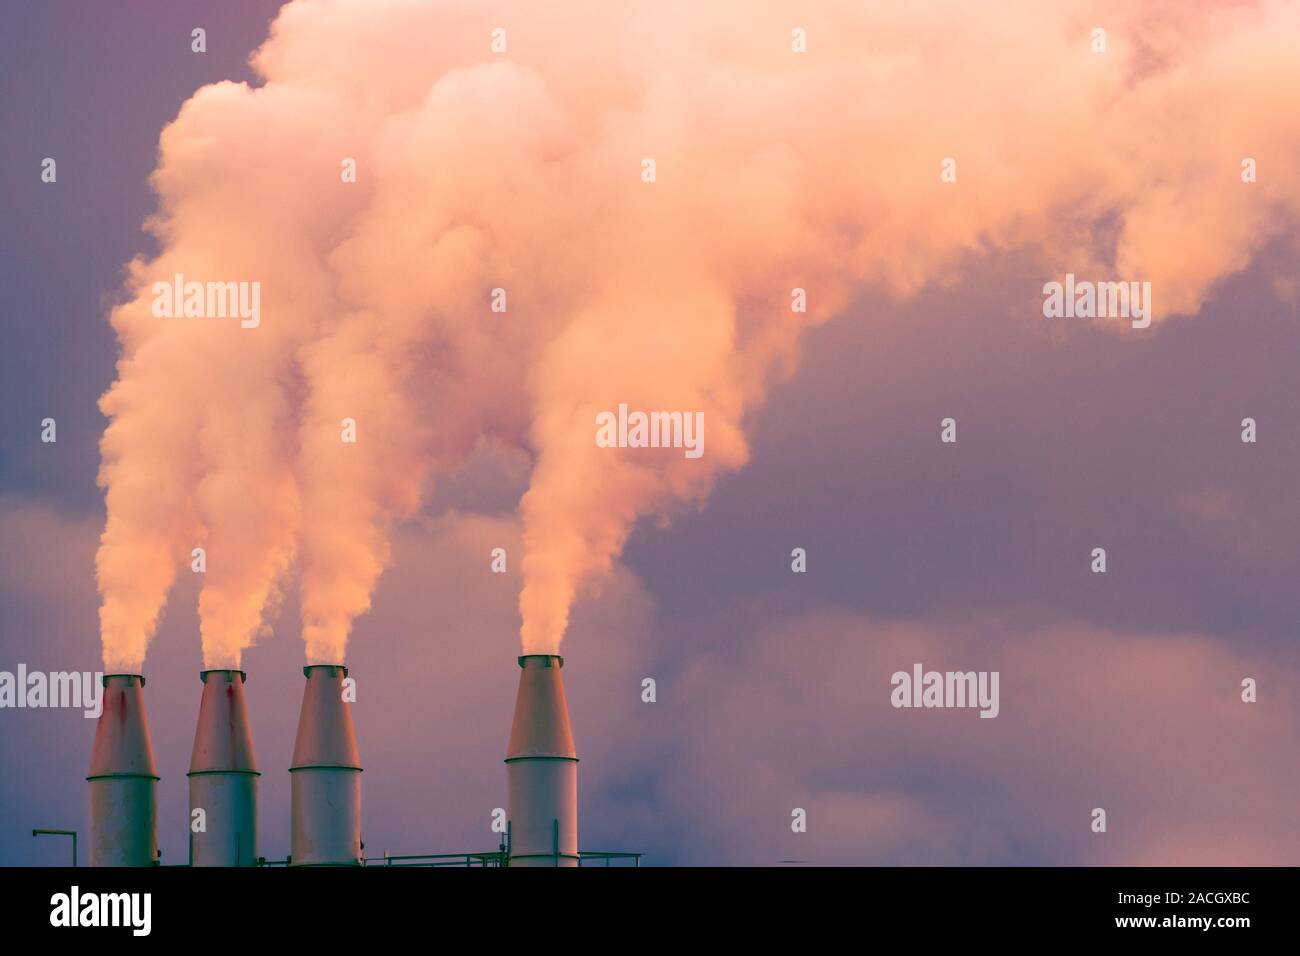 Fumo e vapore in salita l'aria dall'impianto di alimentazione di pile; nuvole scure sullo sfondo; concetto per inquinamento ambientale e il cambiamento climatico Foto Stock